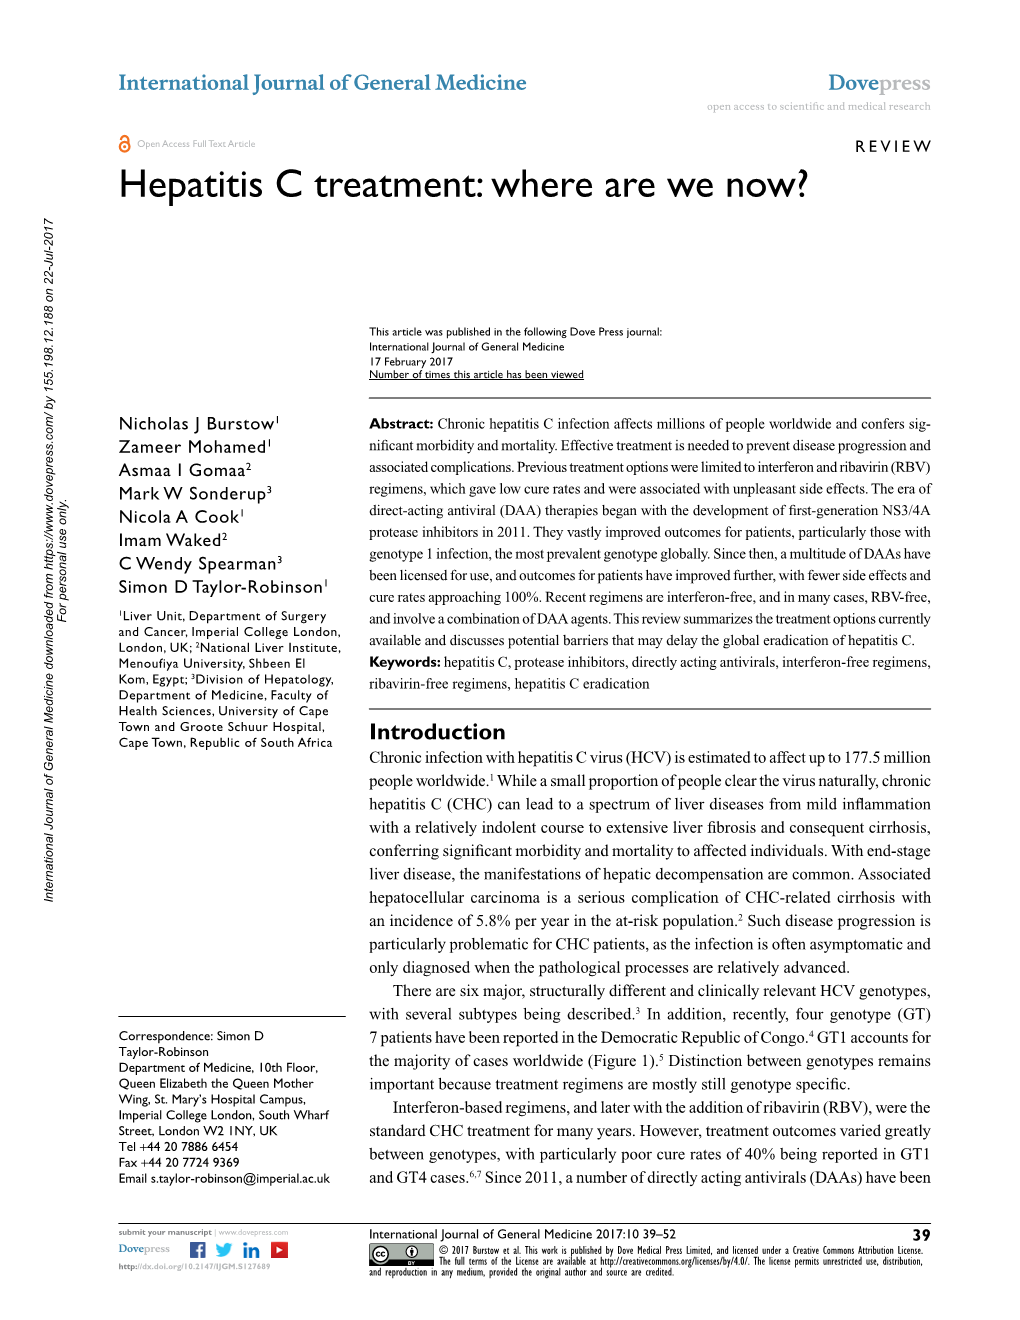 Hepatitis C Treatment: Where Are We Now?